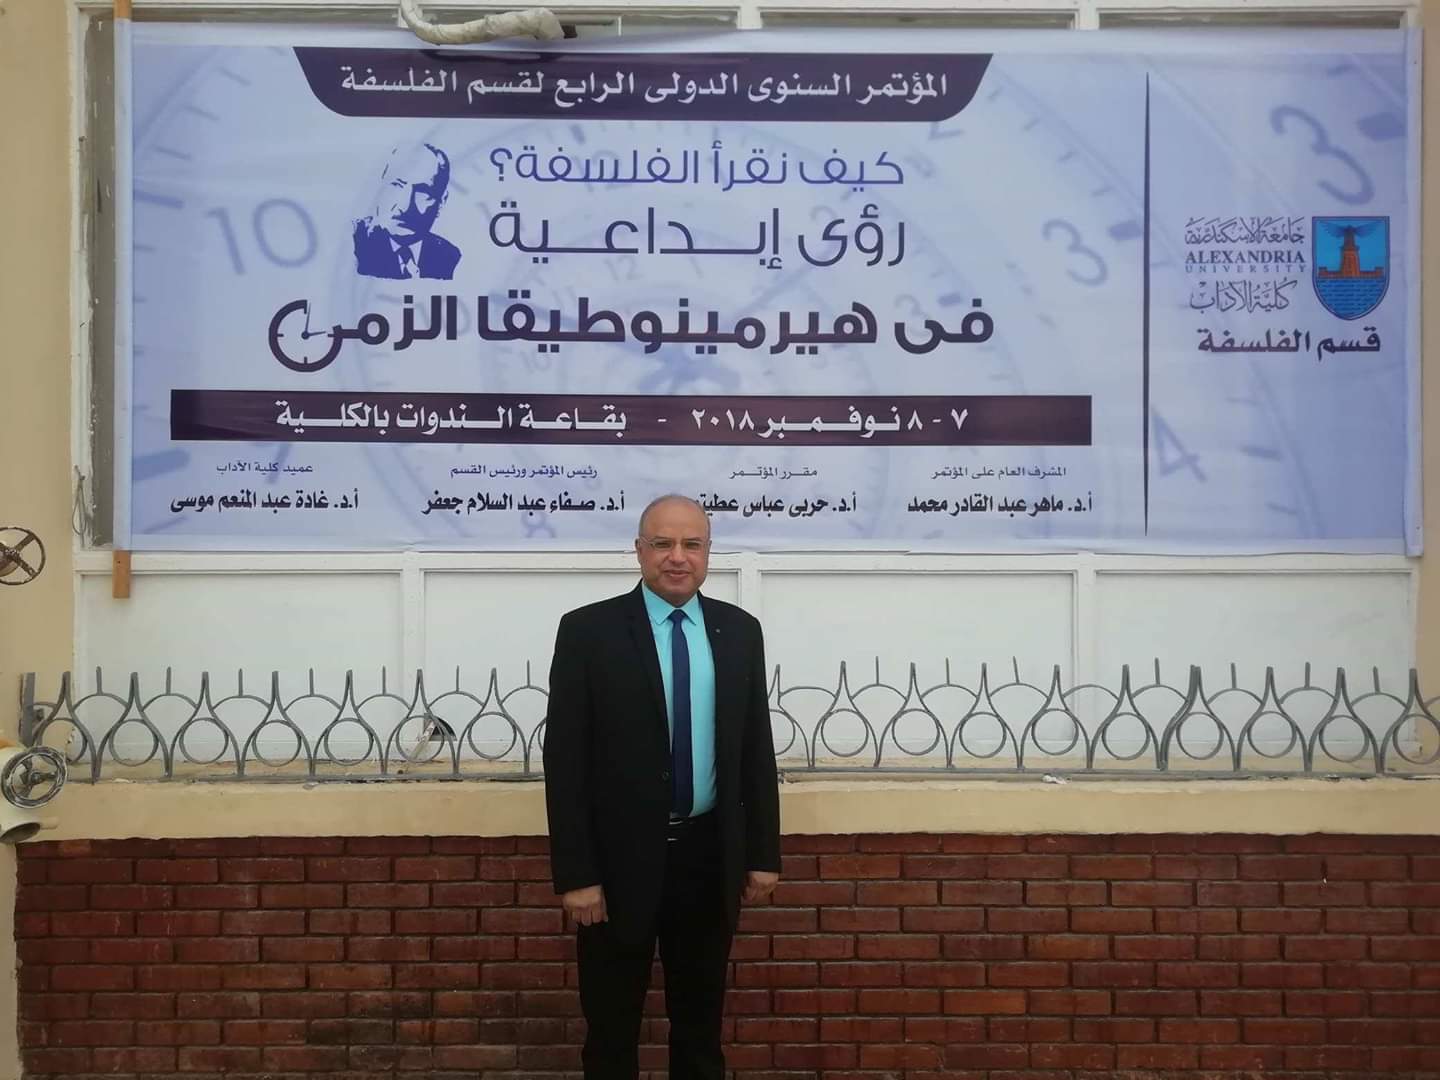 حضور دكتور شرف الدين عبد الحميد  المؤتمر الدولي للفلسفة بجامعة الإسكندرية